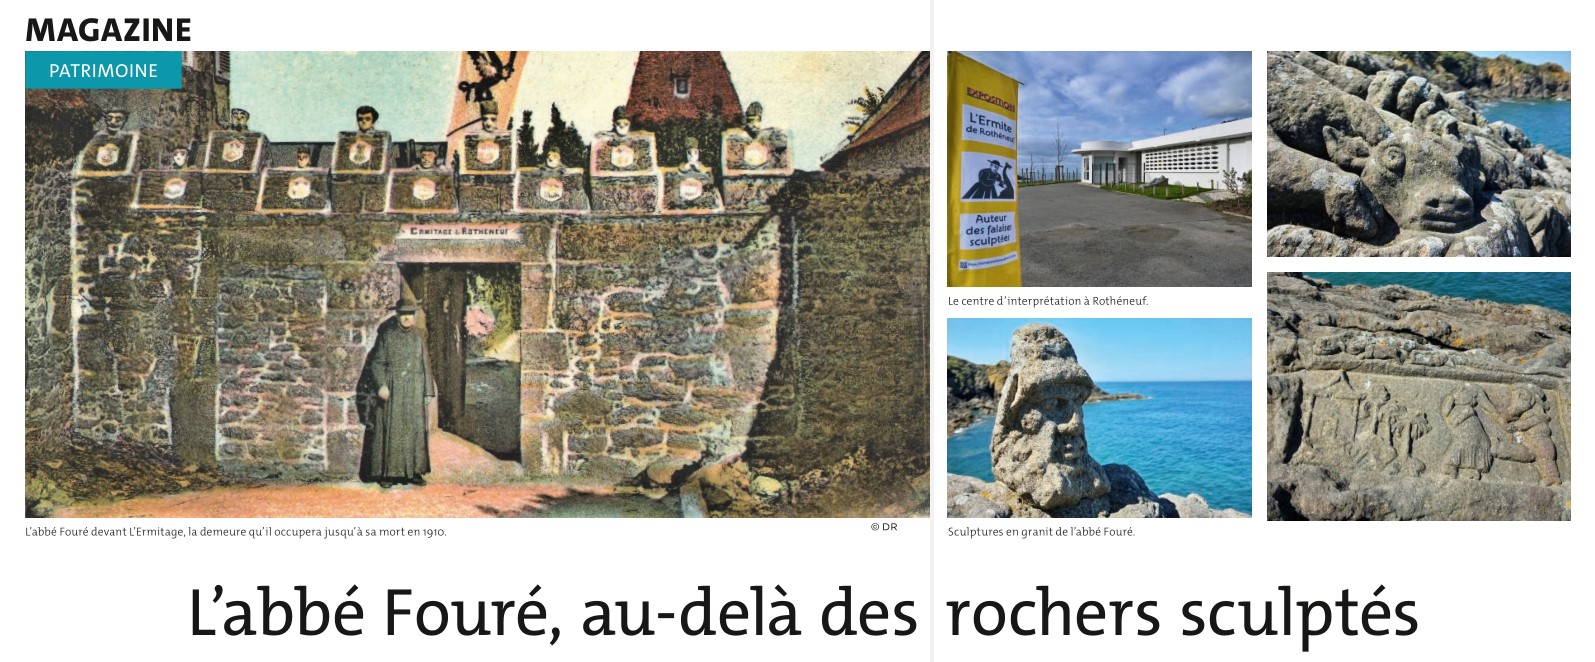 Magazine "Nous-Vous-Ille" n°135 - Département Ille-et-Vilaine